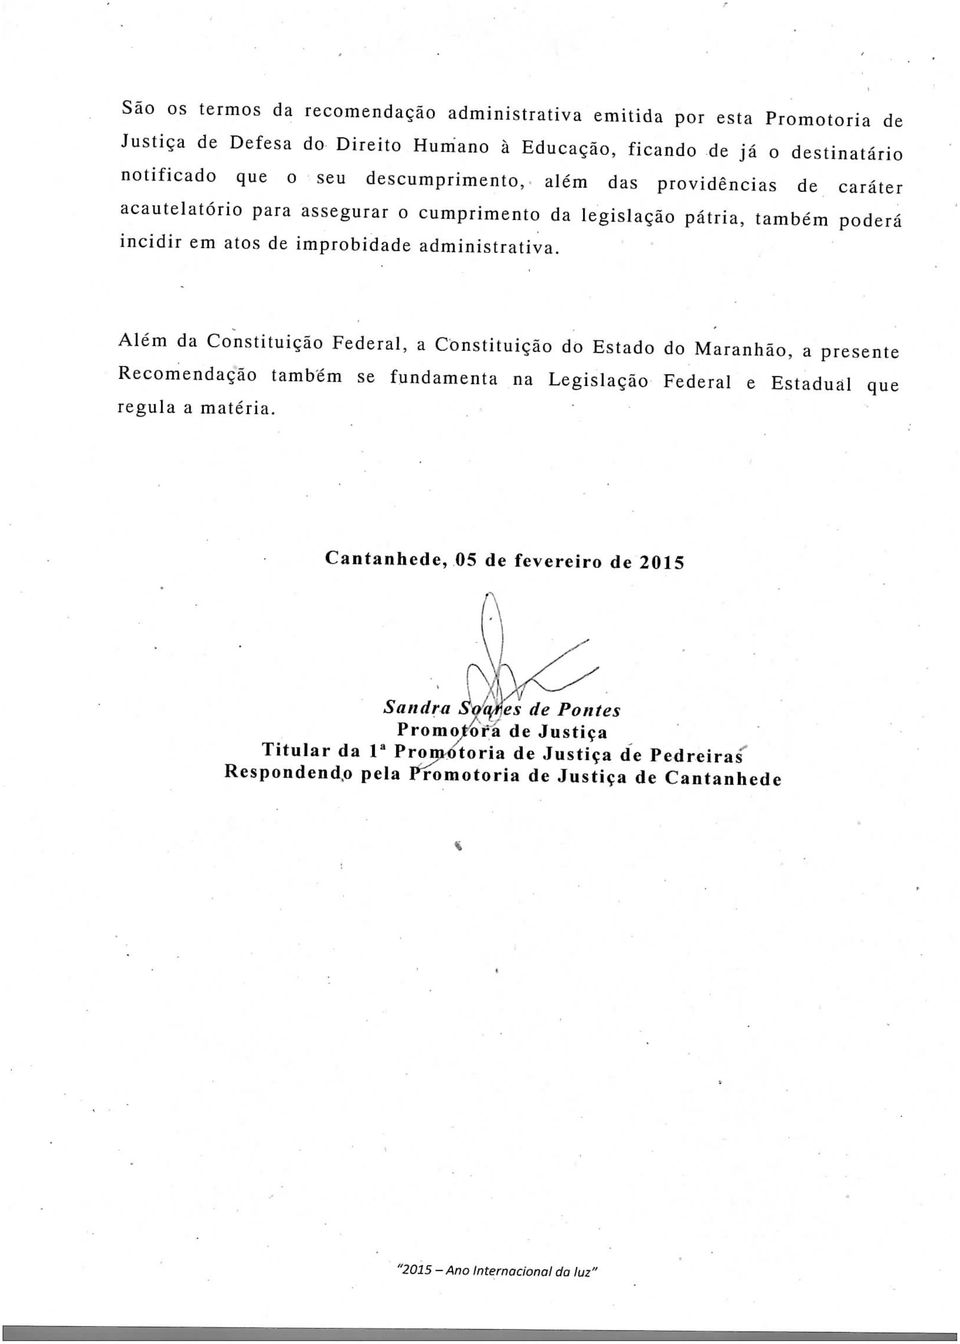 Além da Constituição Federal, a Constituição do Estado do Maranhão, a presente Recomendação também se fundamenta na Legislação Federal e Estadual que regula a matéria.